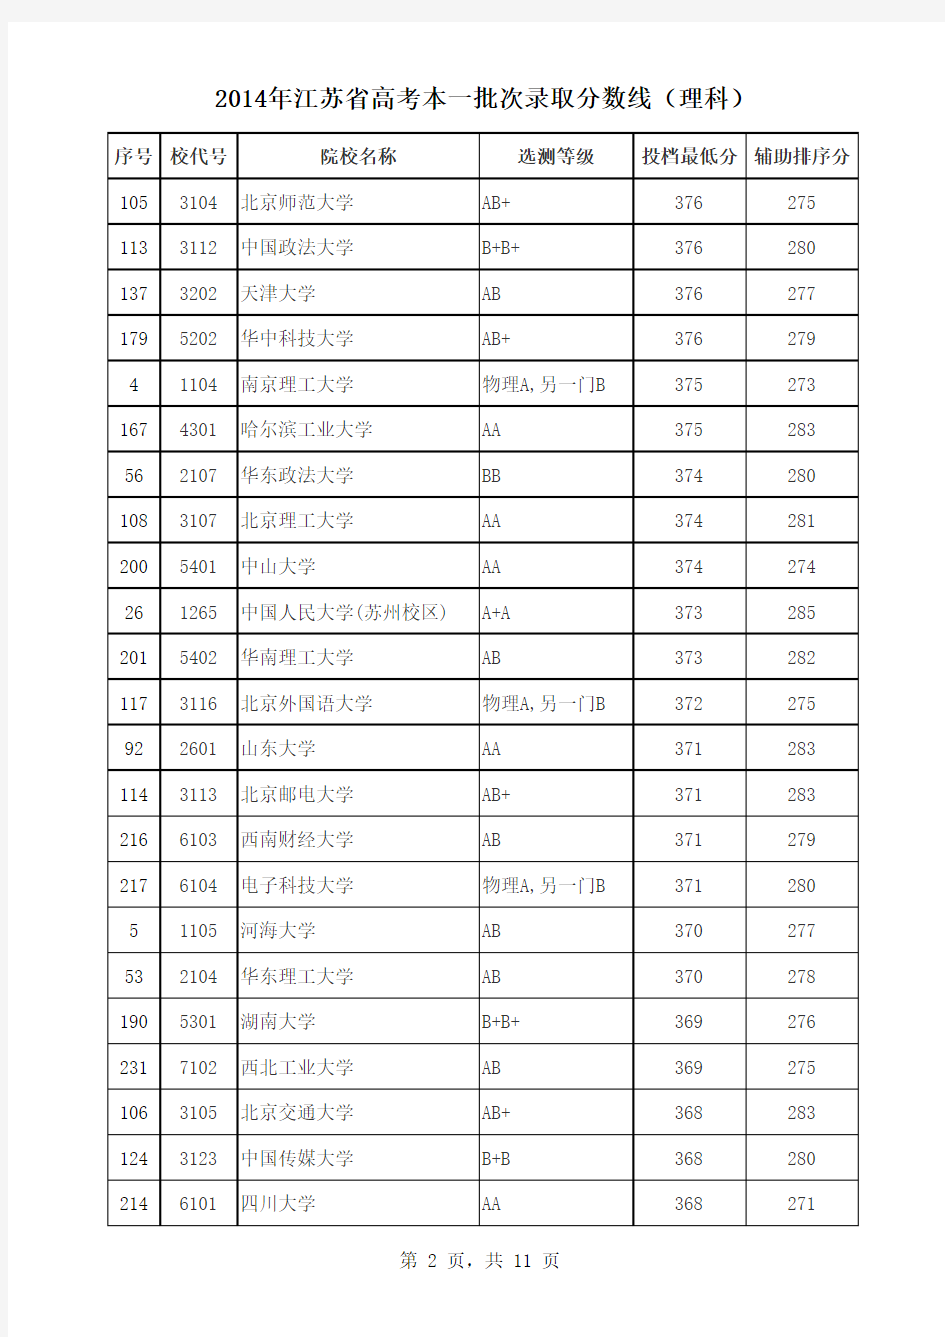 2014年江苏省高考本一批次录取分数线(理科)